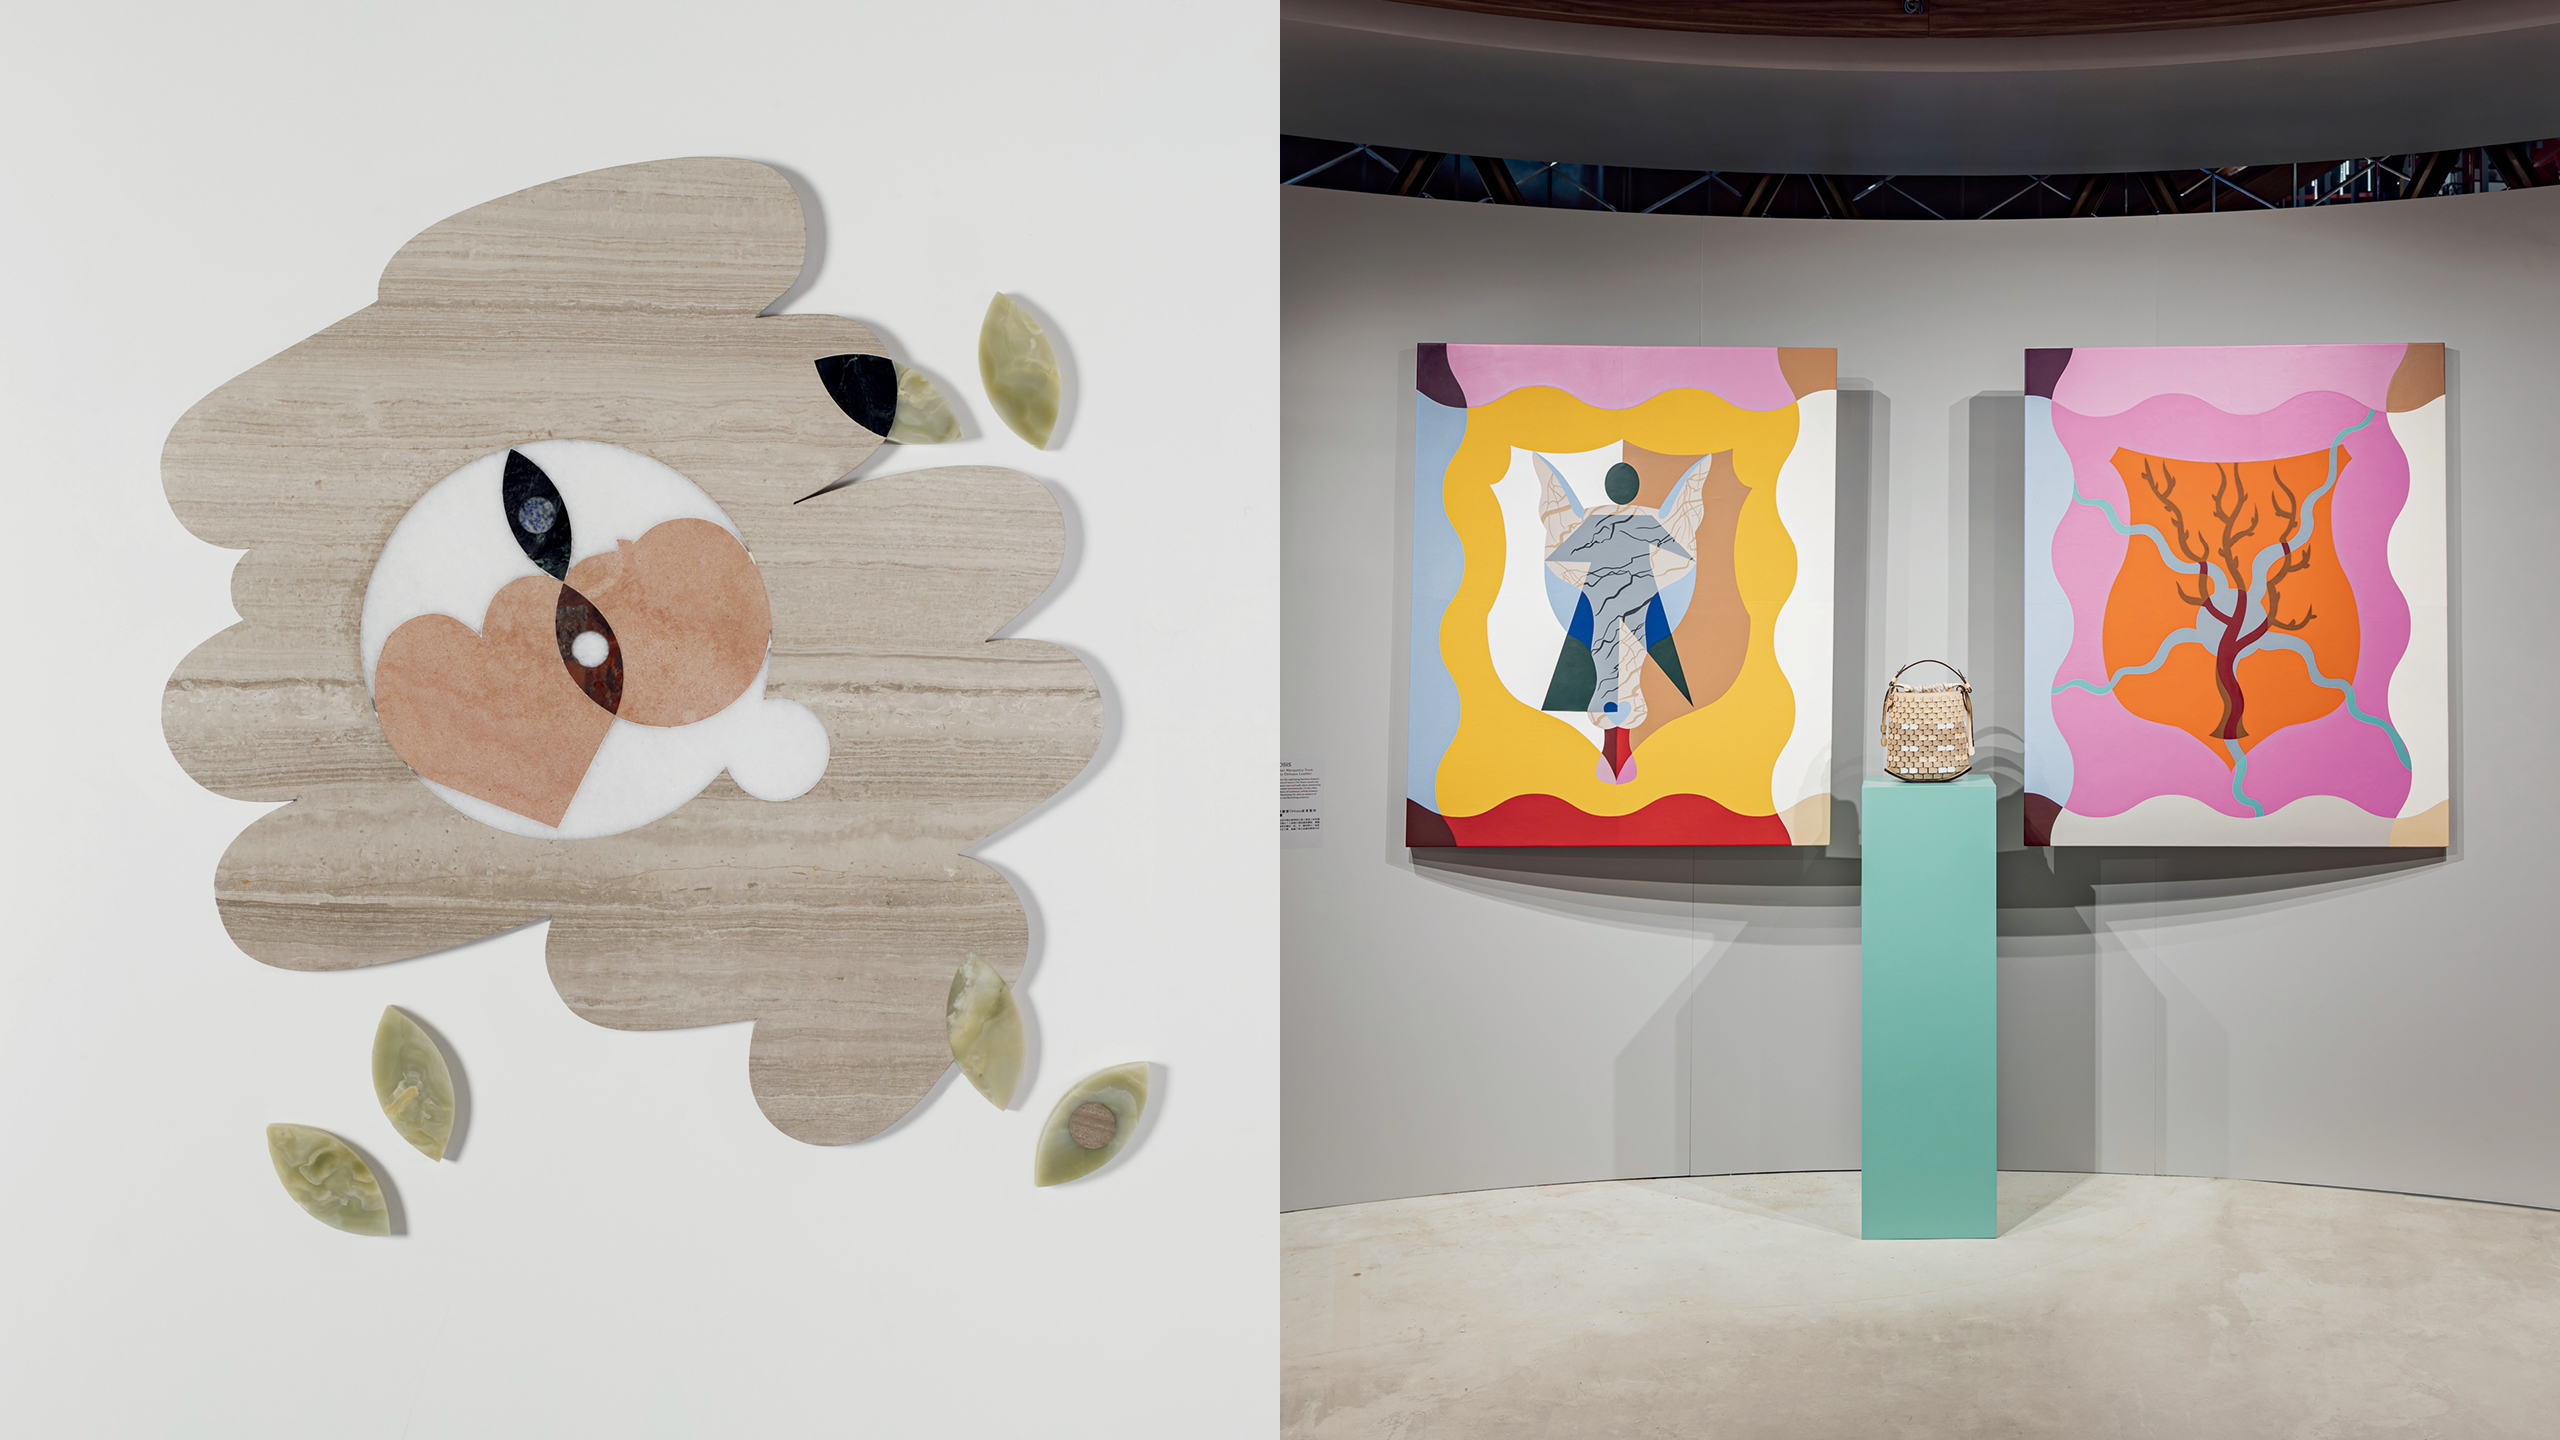 （左）以大理石、石英岩、花岗岩和玛瑙材质组成的地板雕塑， 仿佛在雨后走过一处水洼时浮现的倒影，看见的是童趣造型的爱心和苹果，还是回望的双眸？ Kasper Bosmans 希望 人们以低头的方式凝视这件作品，往内心深处探索回答。 （右）今年3月为了庆祝香港巴塞尔艺术展（Art Basel）， Delvaux 选址 K11 MUSEA 多维展览活动空间举办独家艺术展，带来 Kasper Bosmans 的作品与亚洲艺术爱好者面对面。